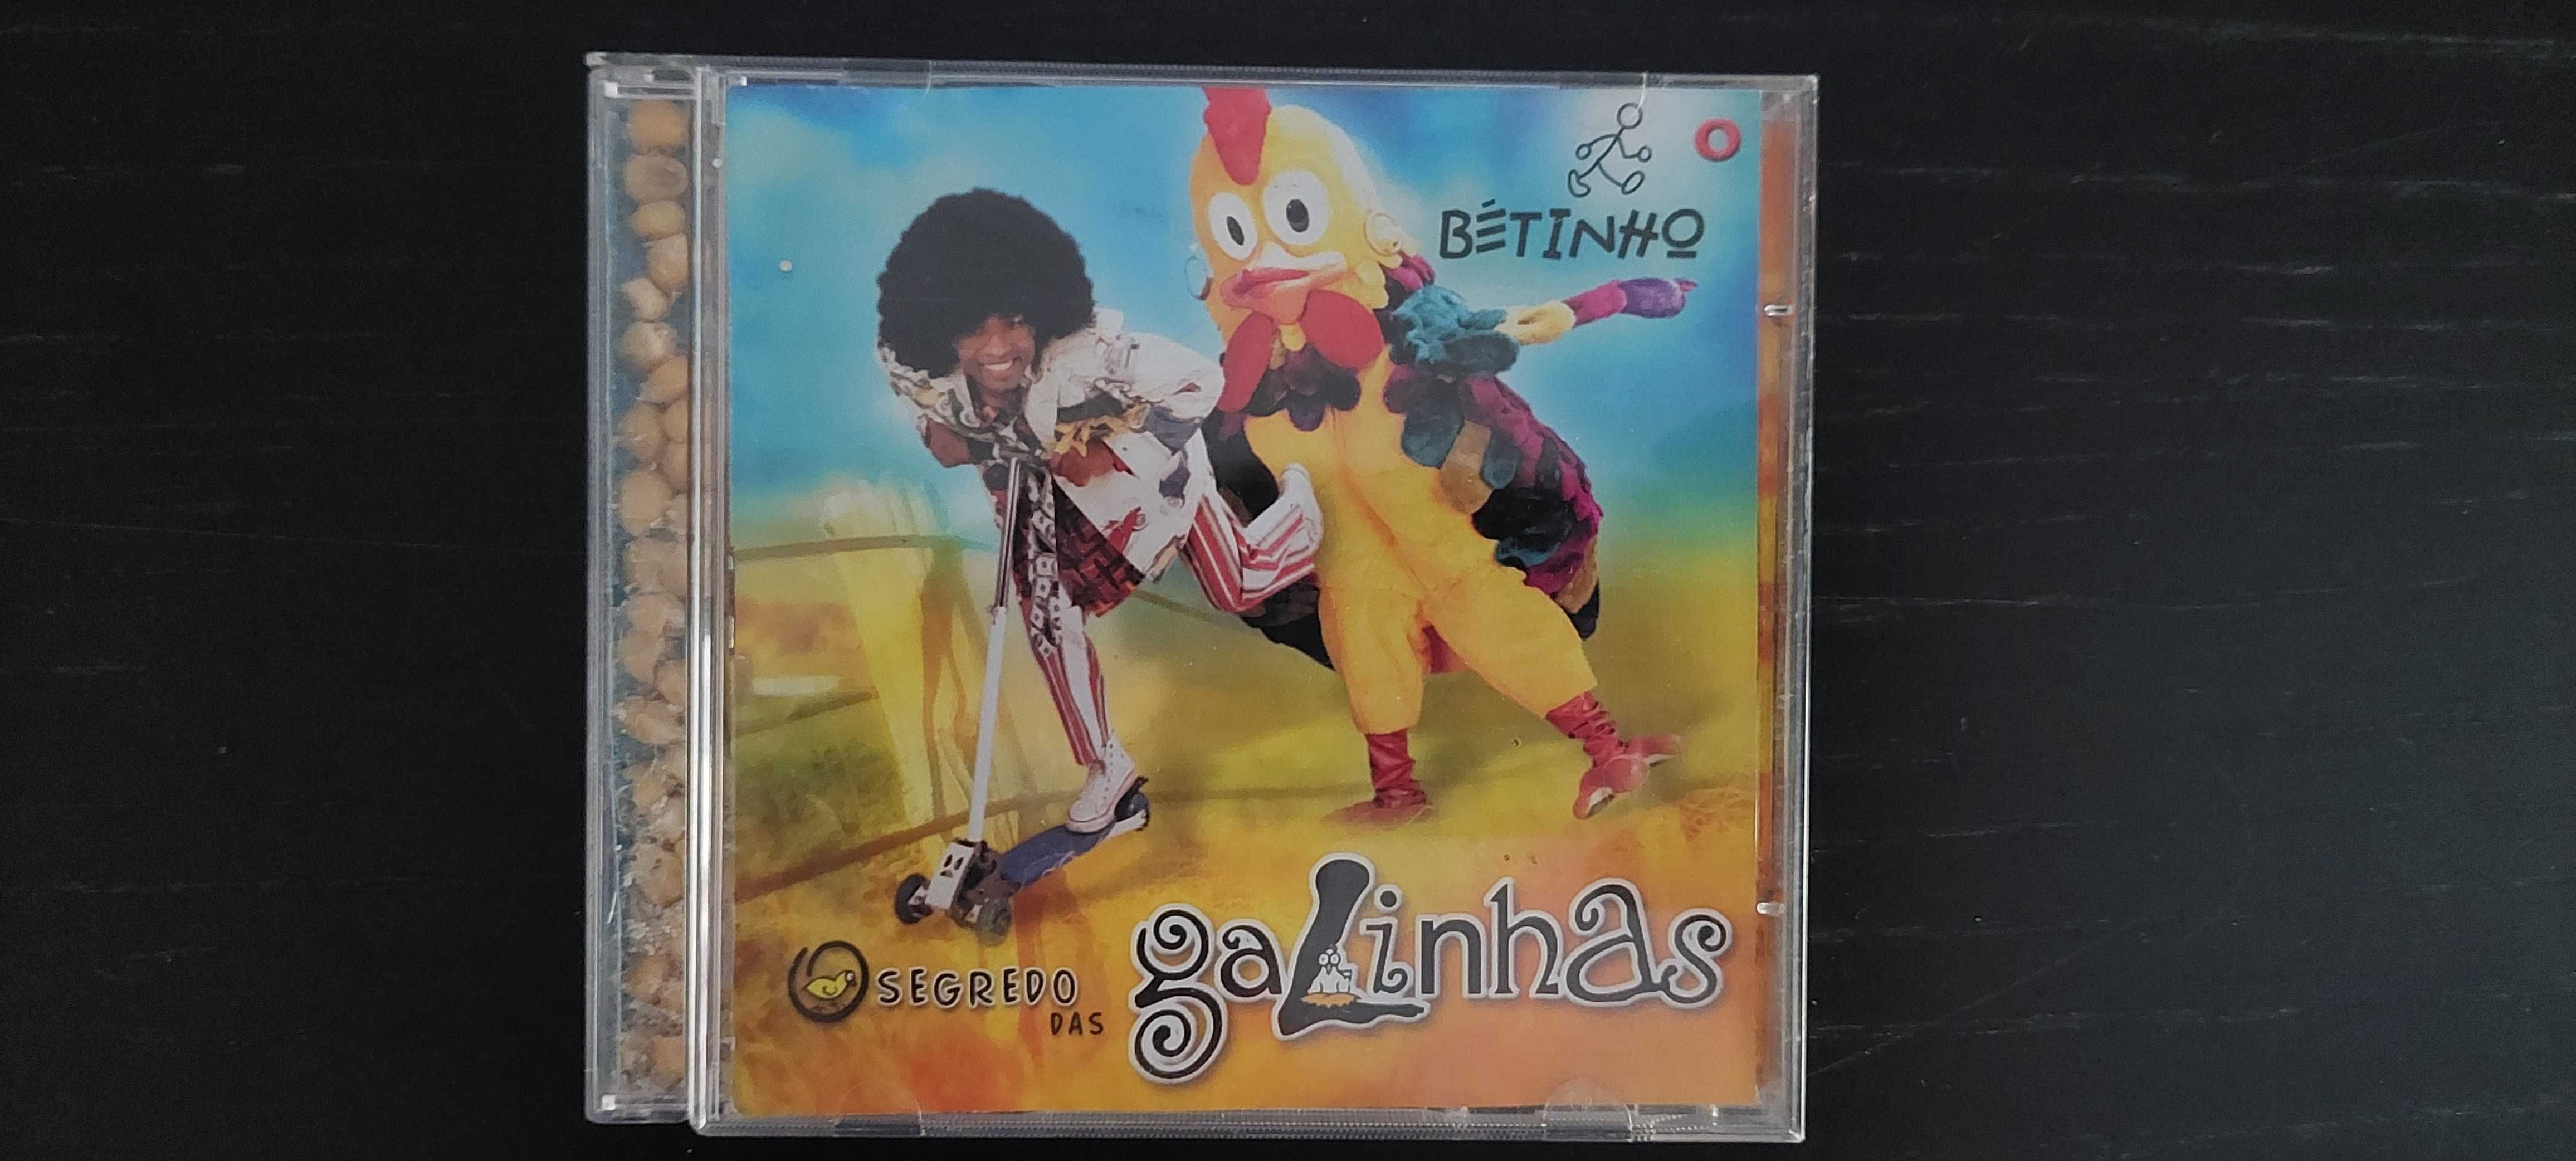 CD Original Betinho - O segredo das galinhas